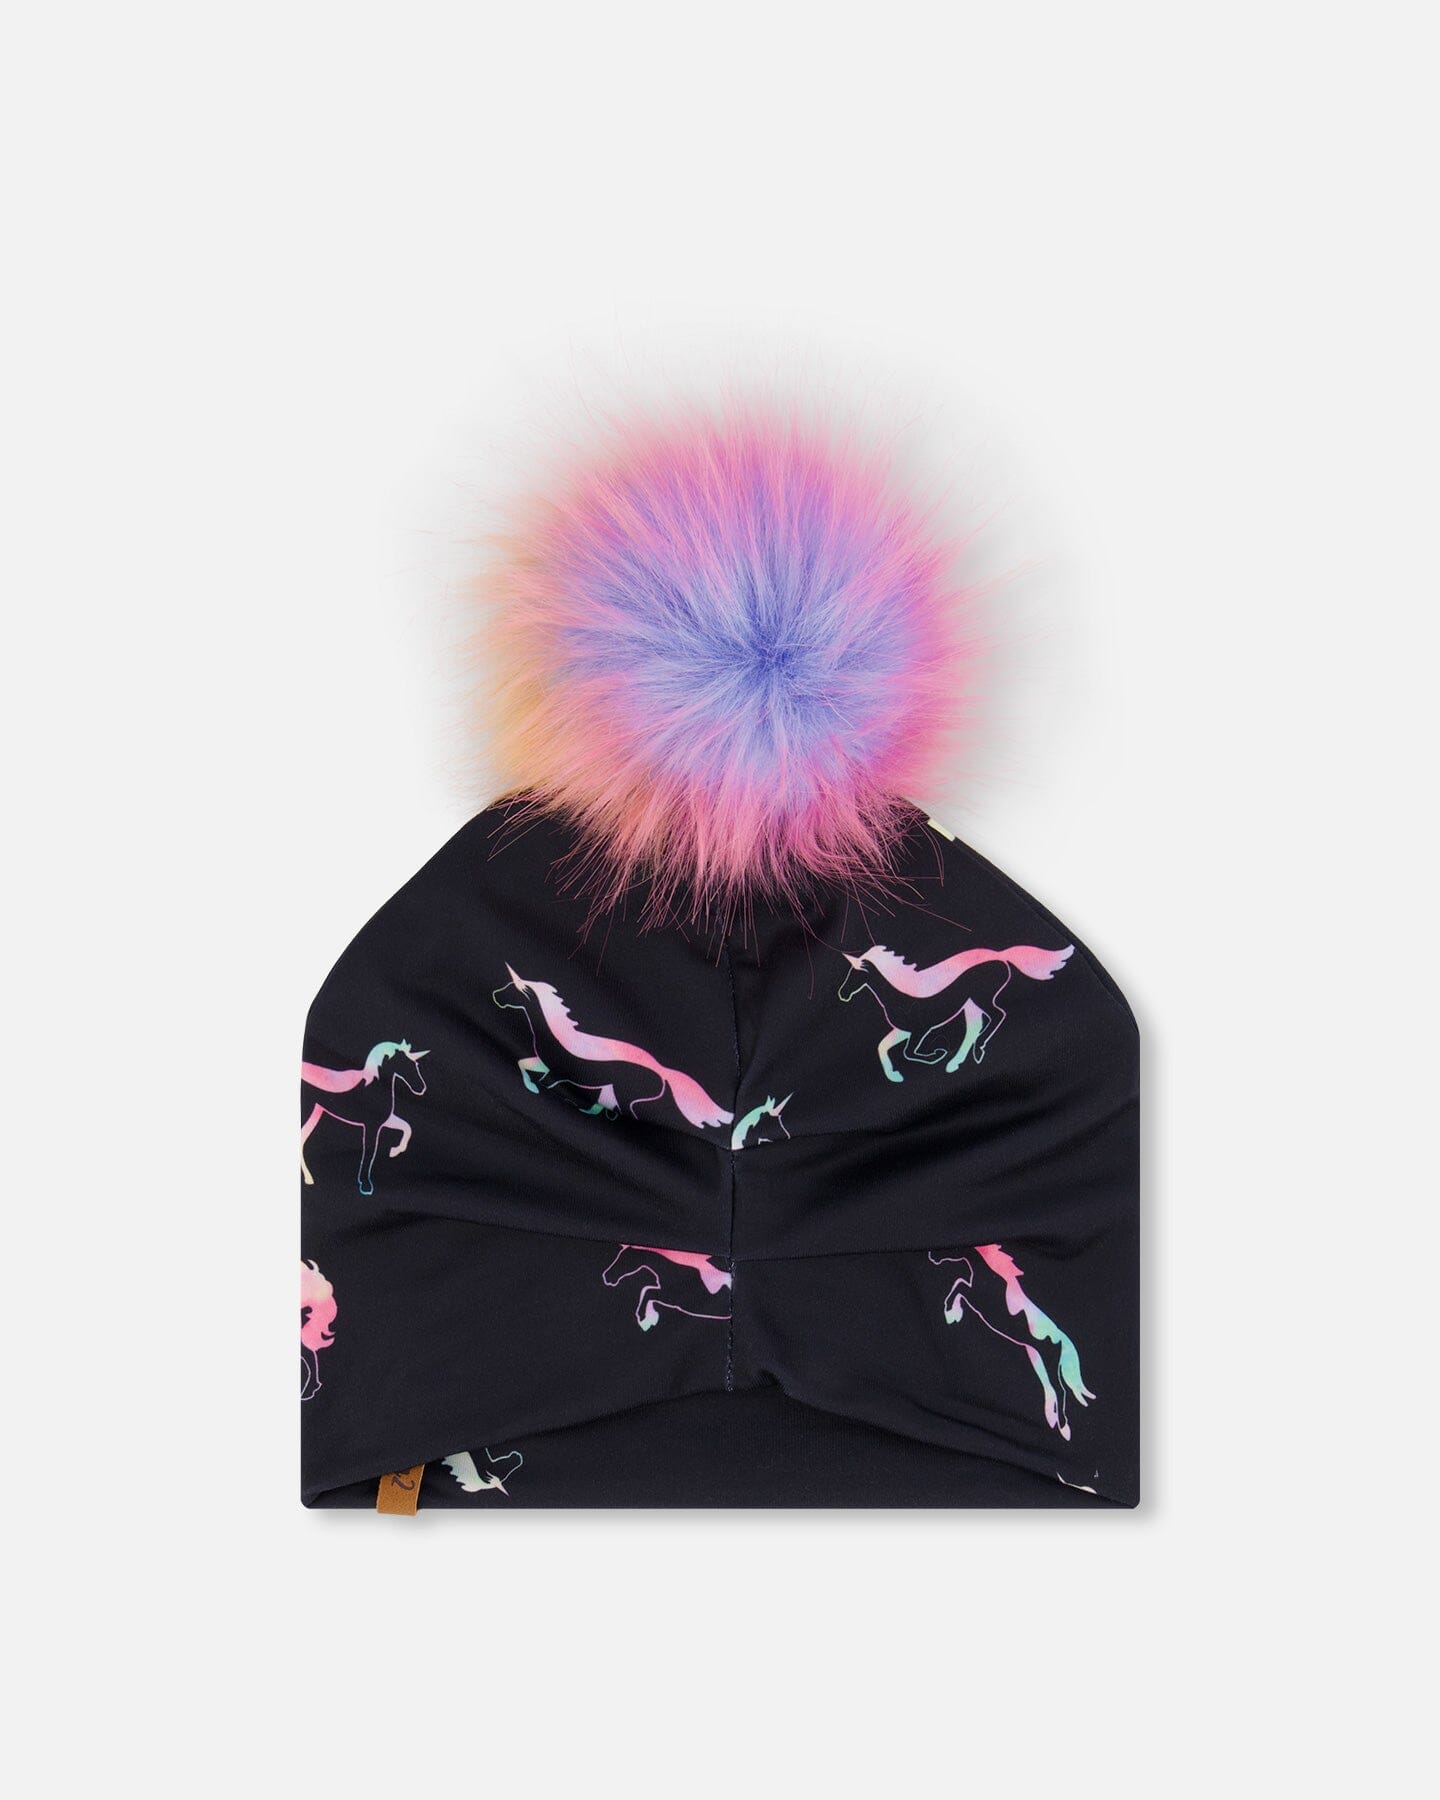 Detachable Pompom Hat Black Printed Multicolor Unicorns Outdoor Accessories Deux par Deux 